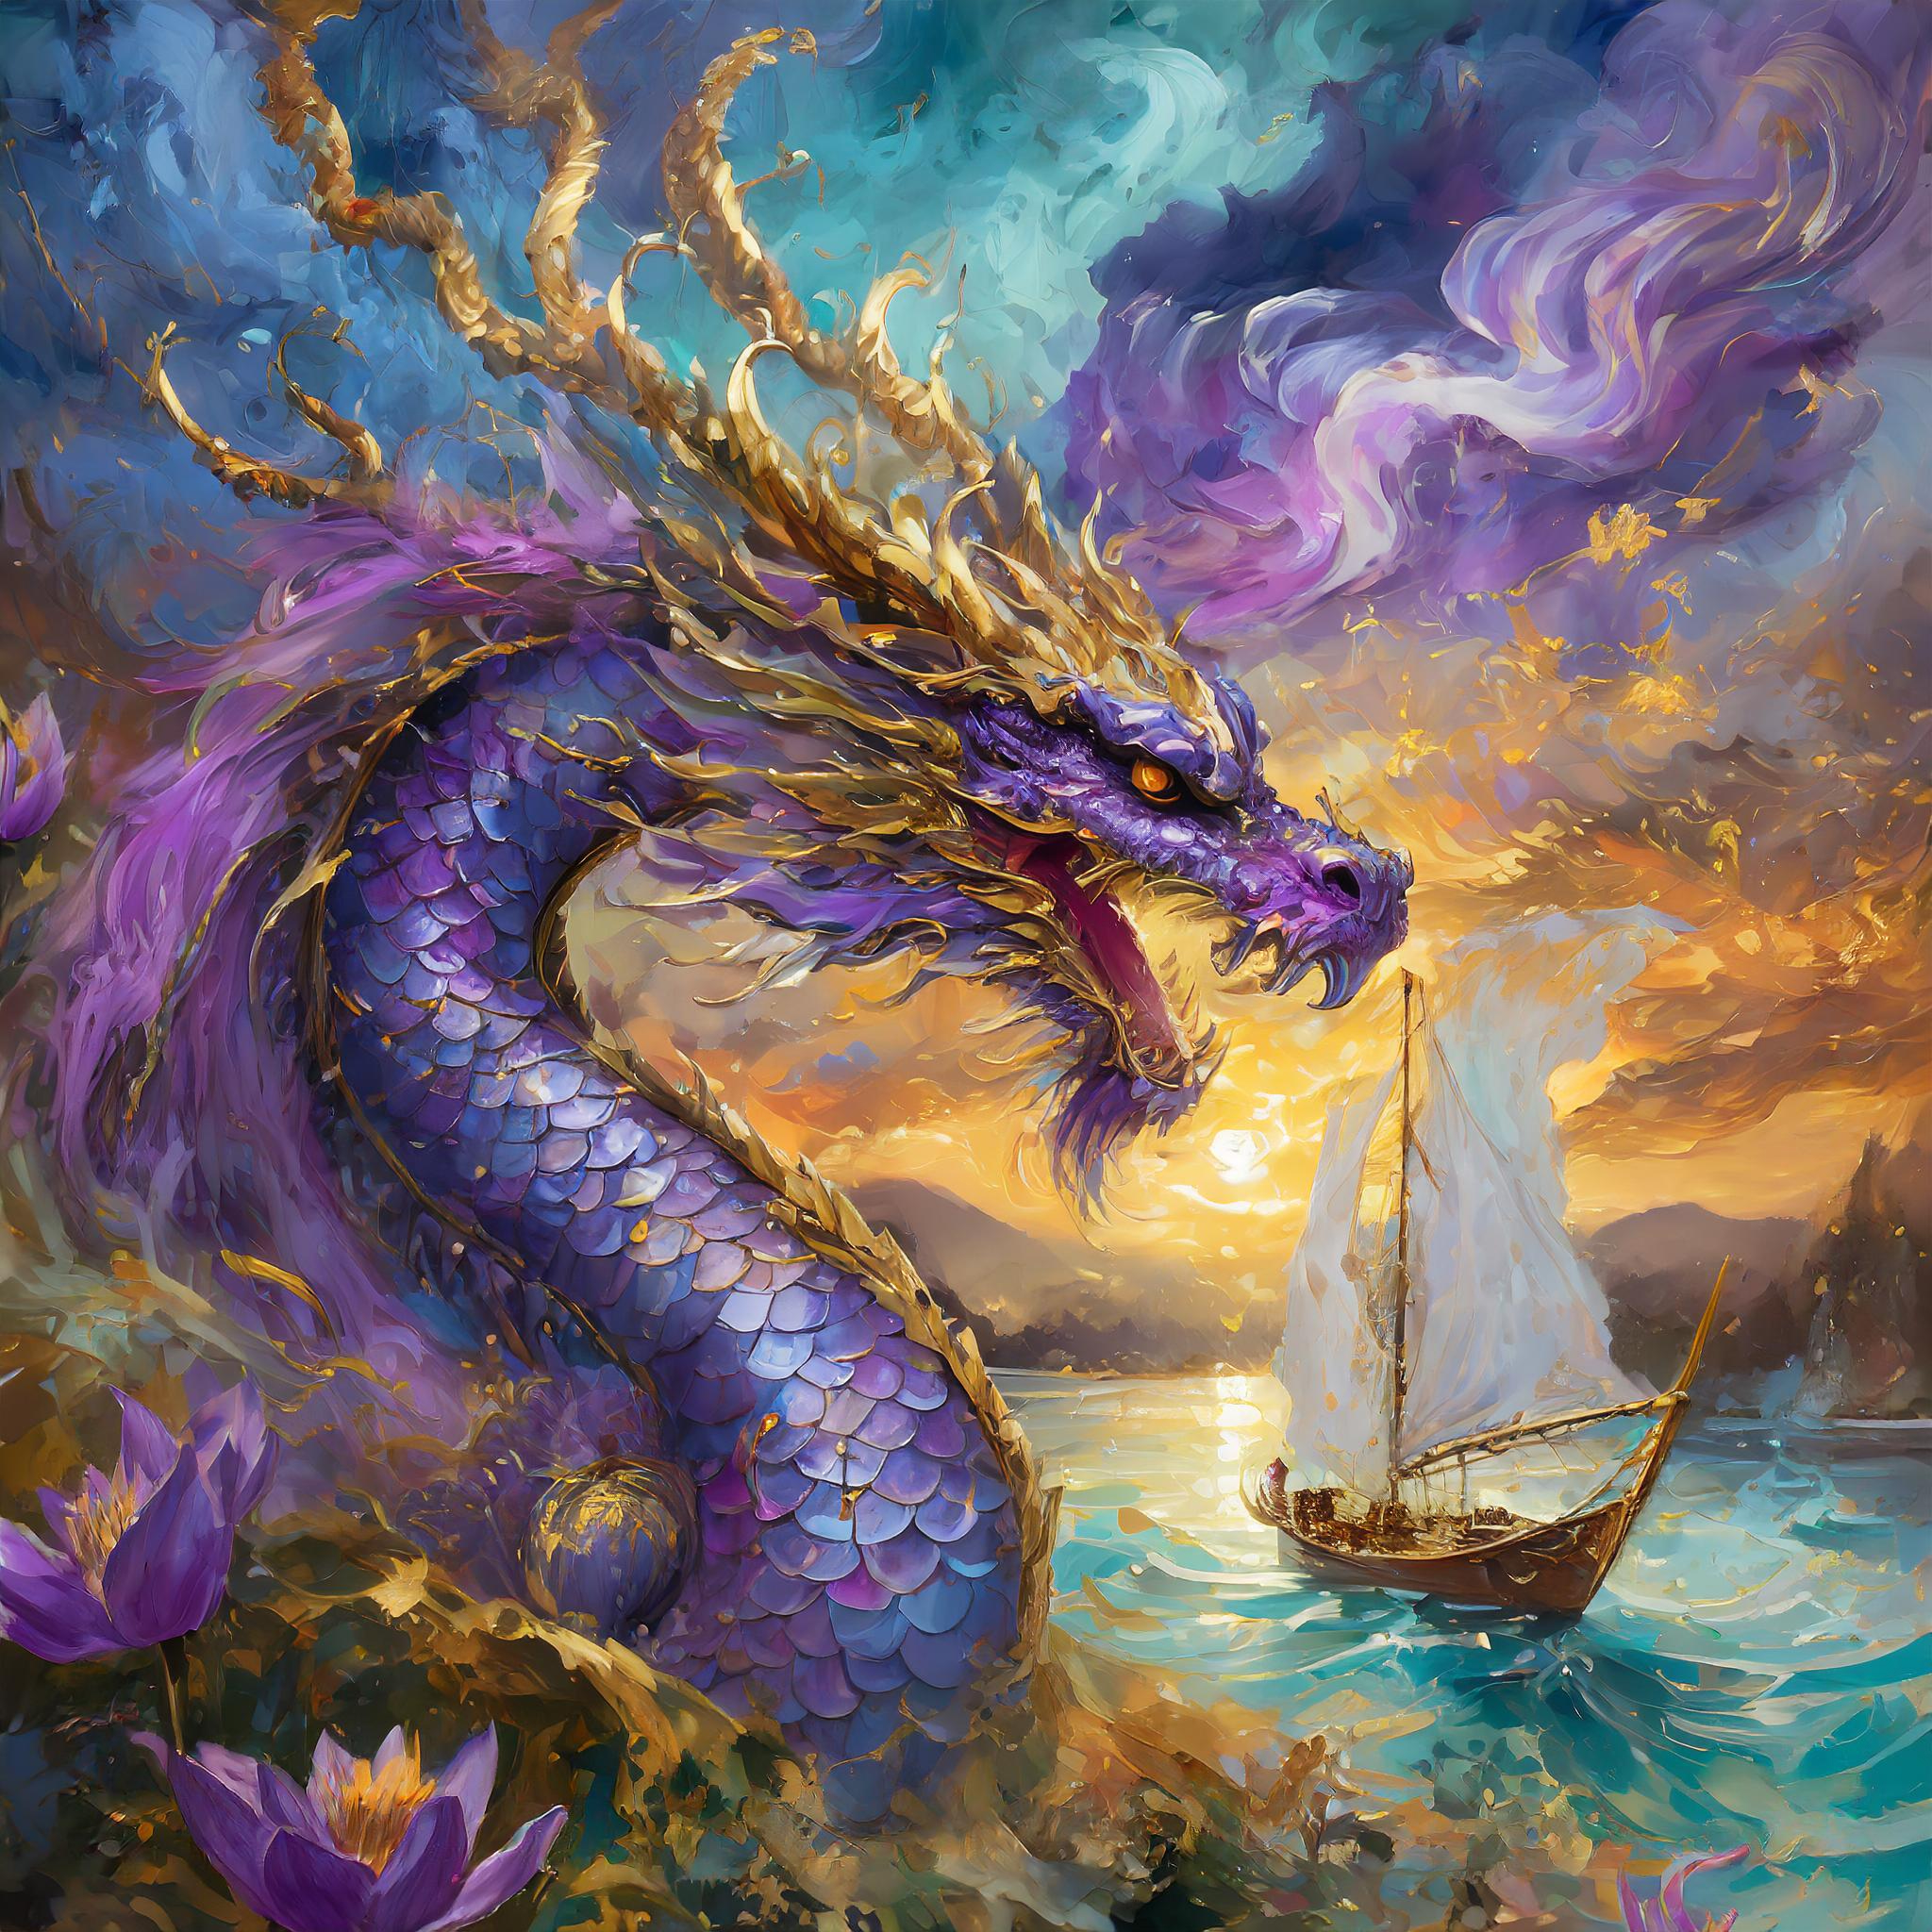 Dragon Sailboat